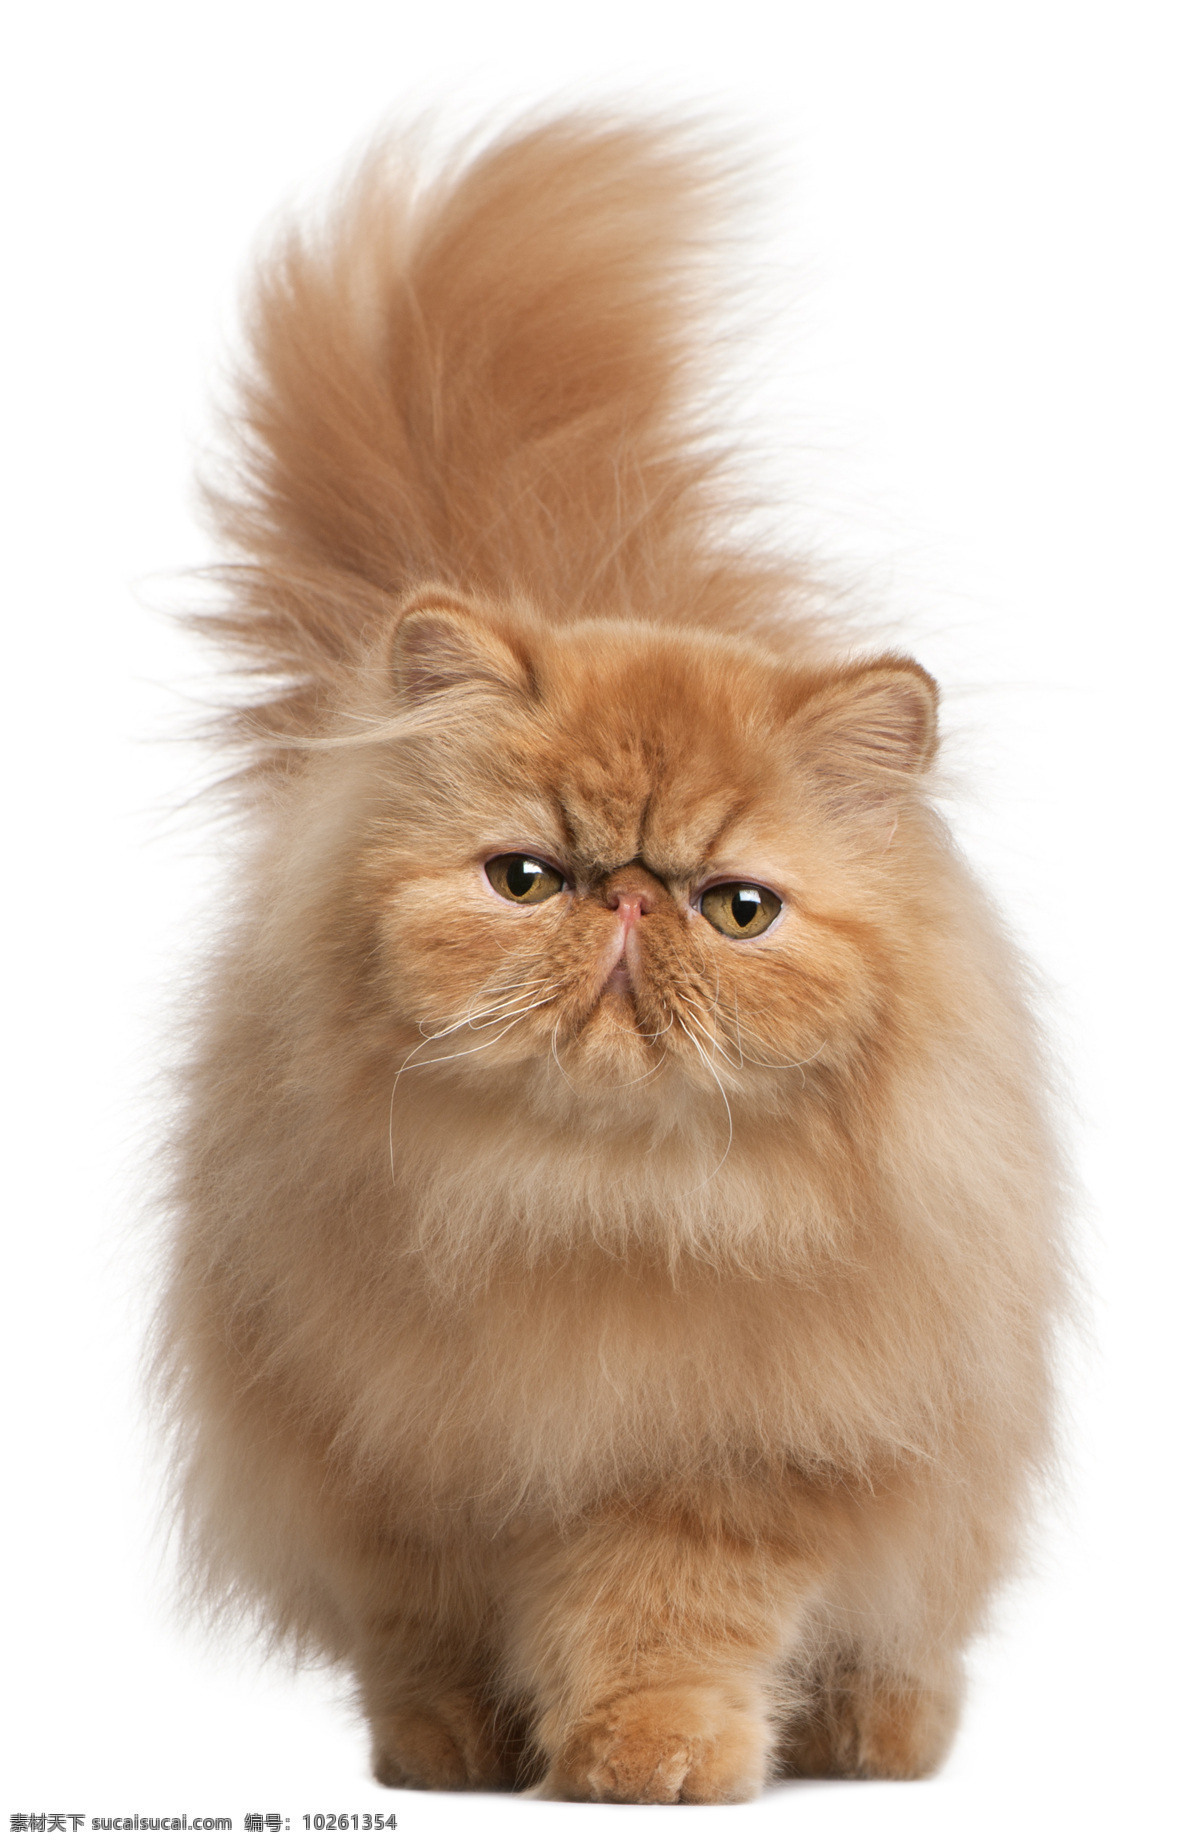 可爱 波斯猫 猫 小猫 猫咪 宠物 萌 动物世界 猫咪图片 生物世界